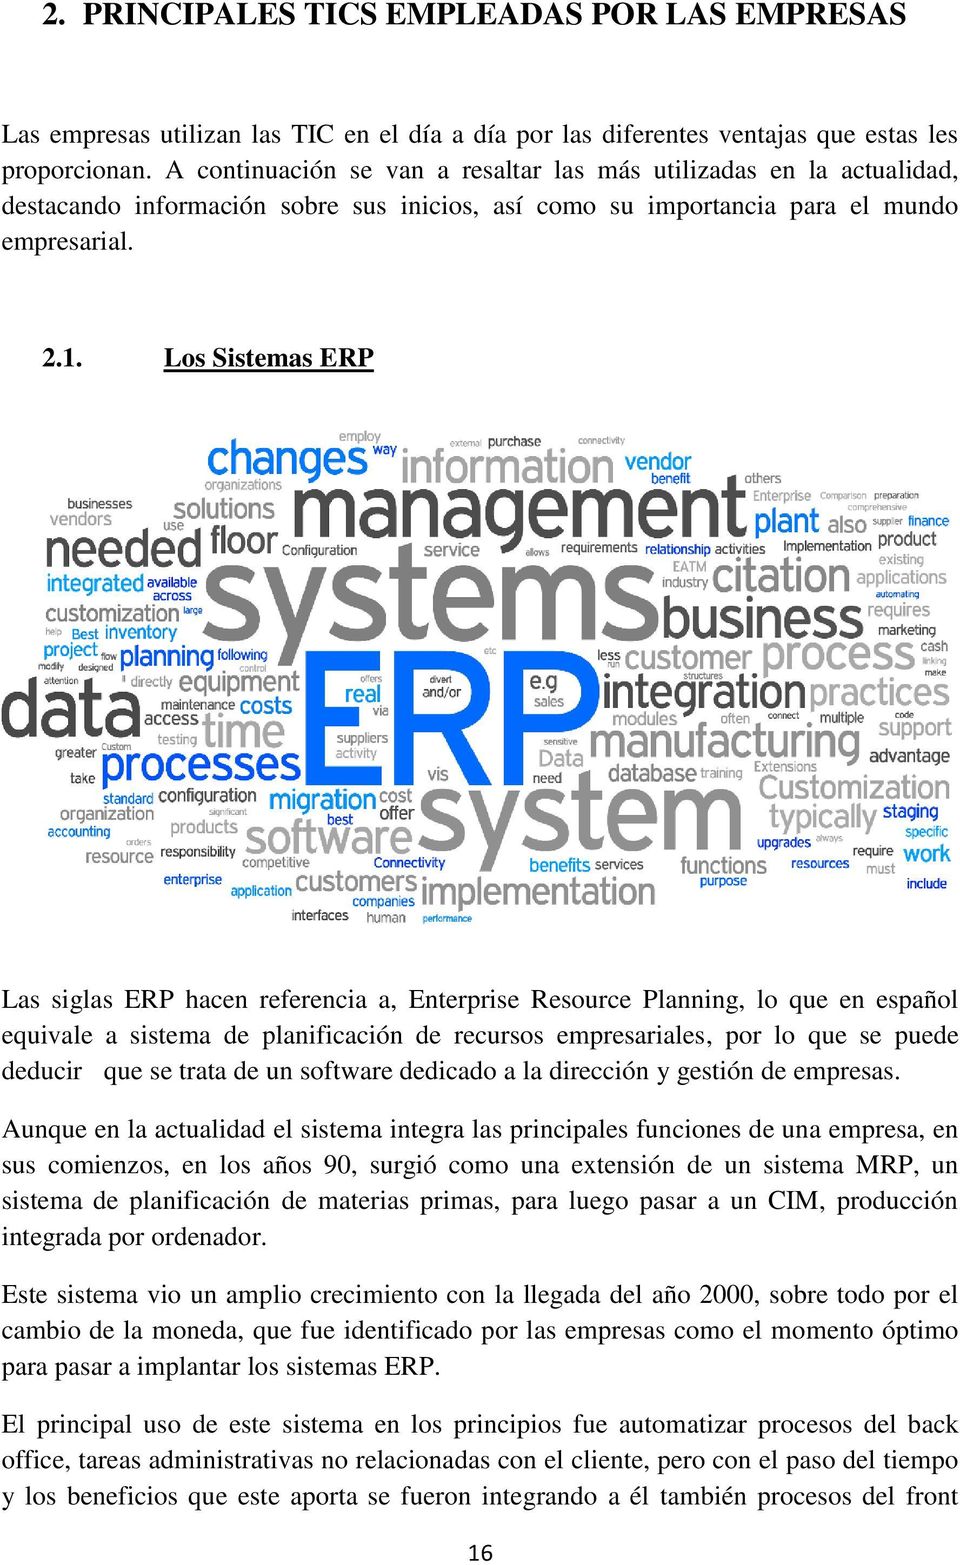 Los Sistemas ERP Las siglas ERP hacen referencia a, Enterprise Resource Planning, lo que en español equivale a sistema de planificación de recursos empresariales, por lo que se puede deducir que se